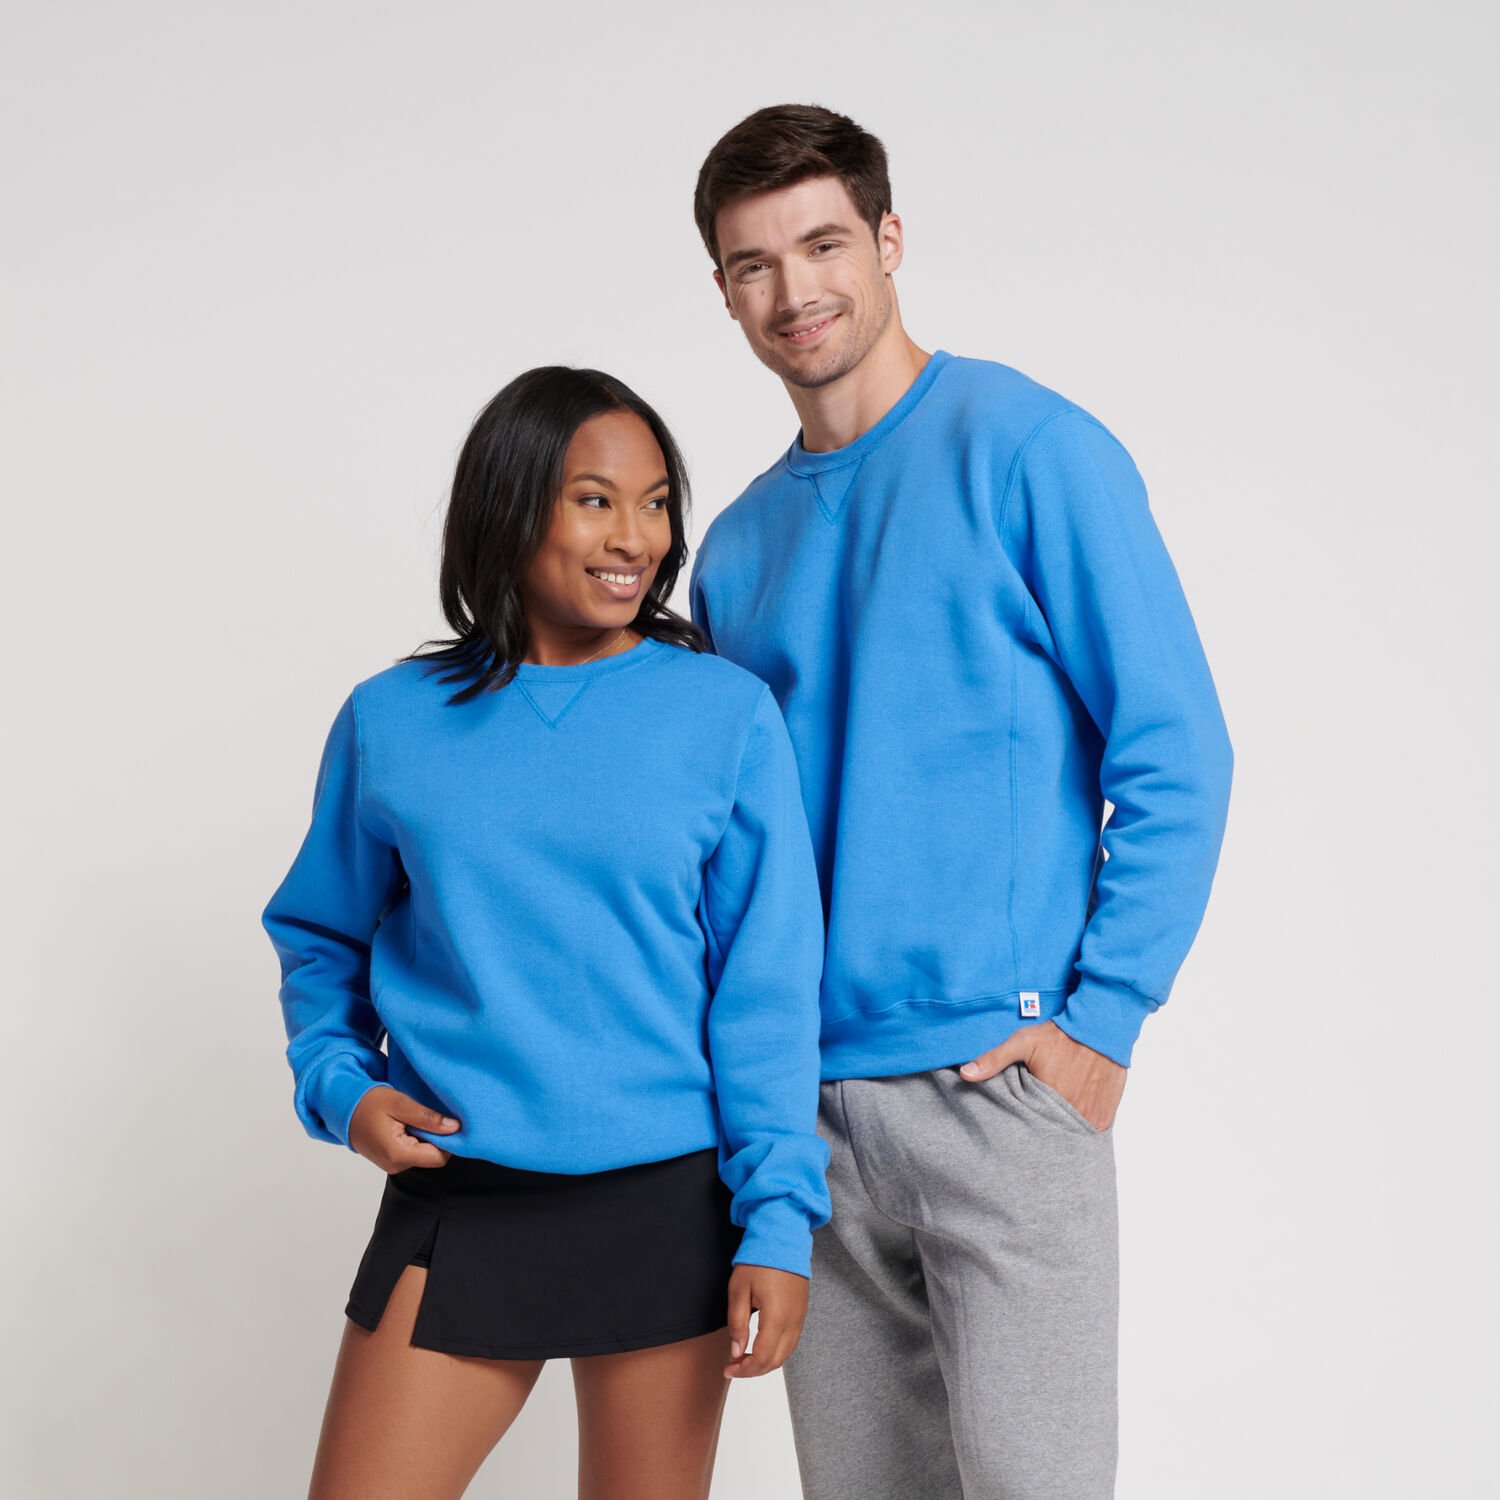 Dri-Power® Fleece Crew Sweatshirt Collegiate Blue